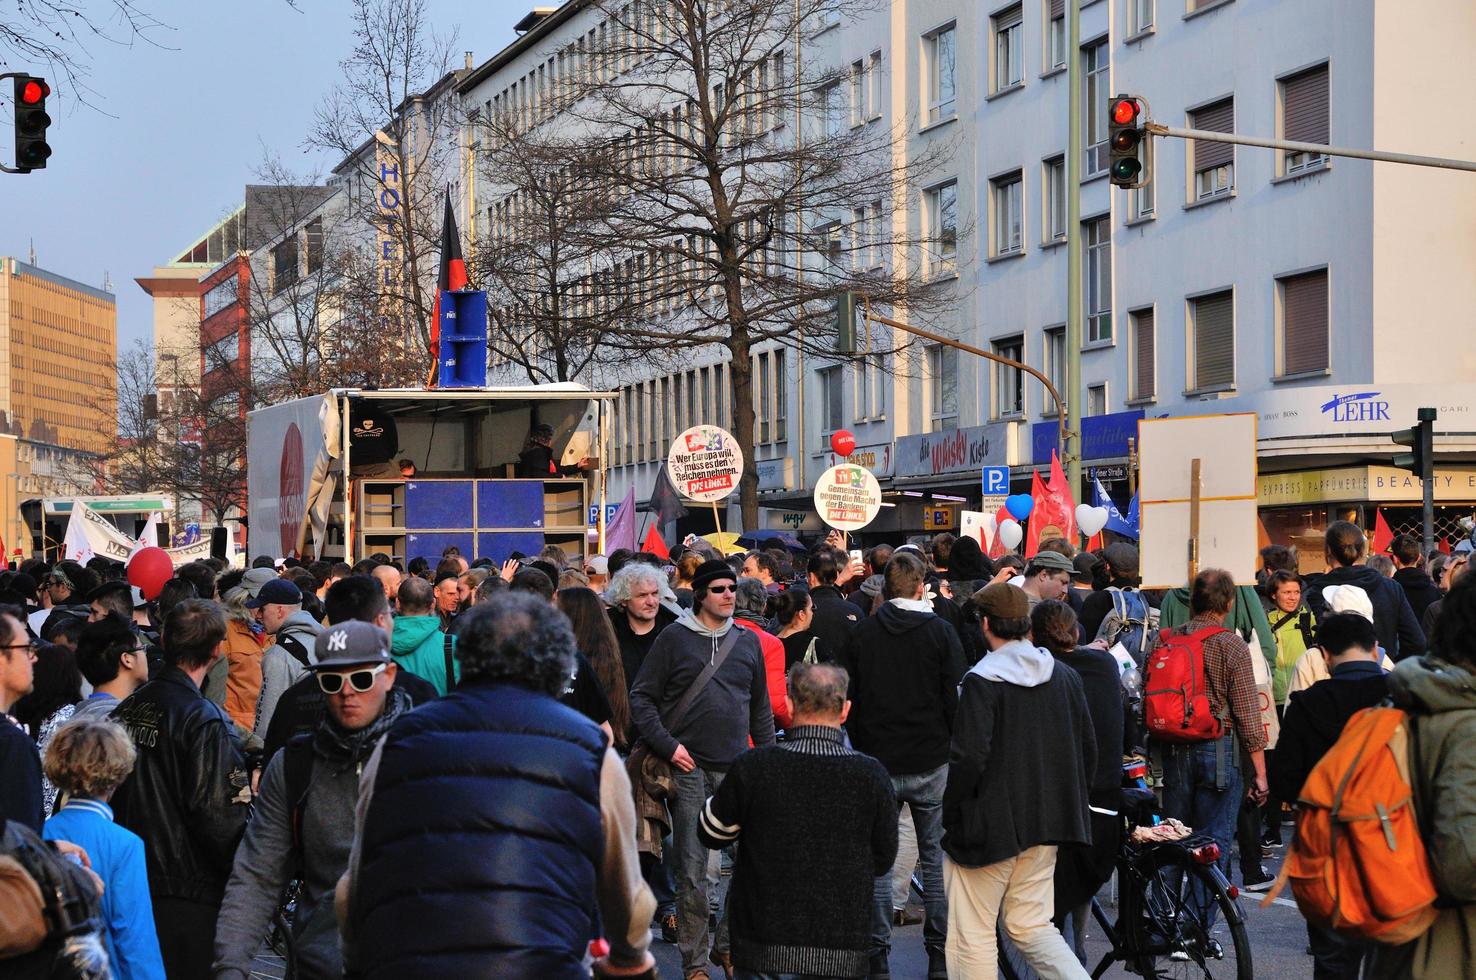 Francfort, Allemagne - 18 mars 2015 des foules de manifestants, blockupy de démonstration photo